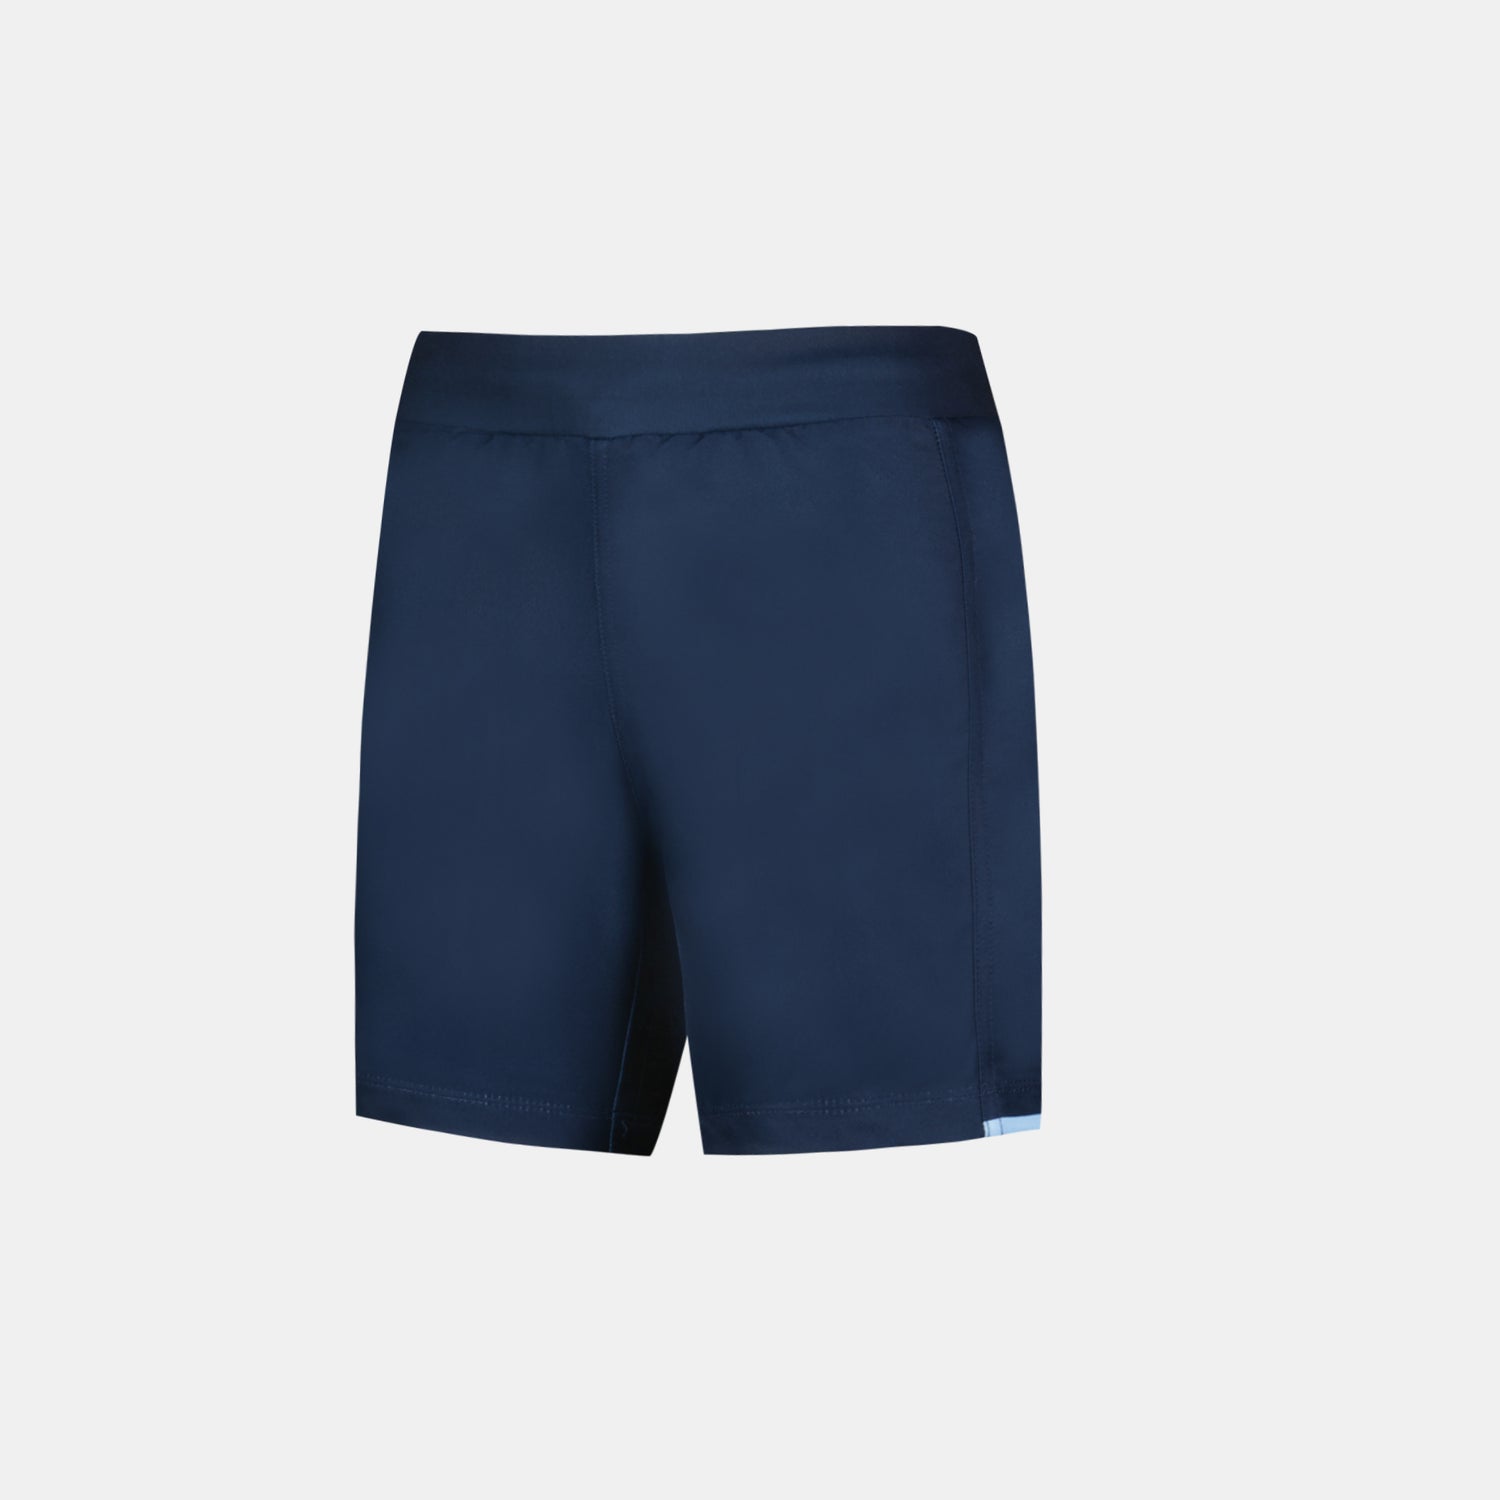 2320334-AB REPLICA Short Enfant blue navy  | Pantalones Cortos para Niño